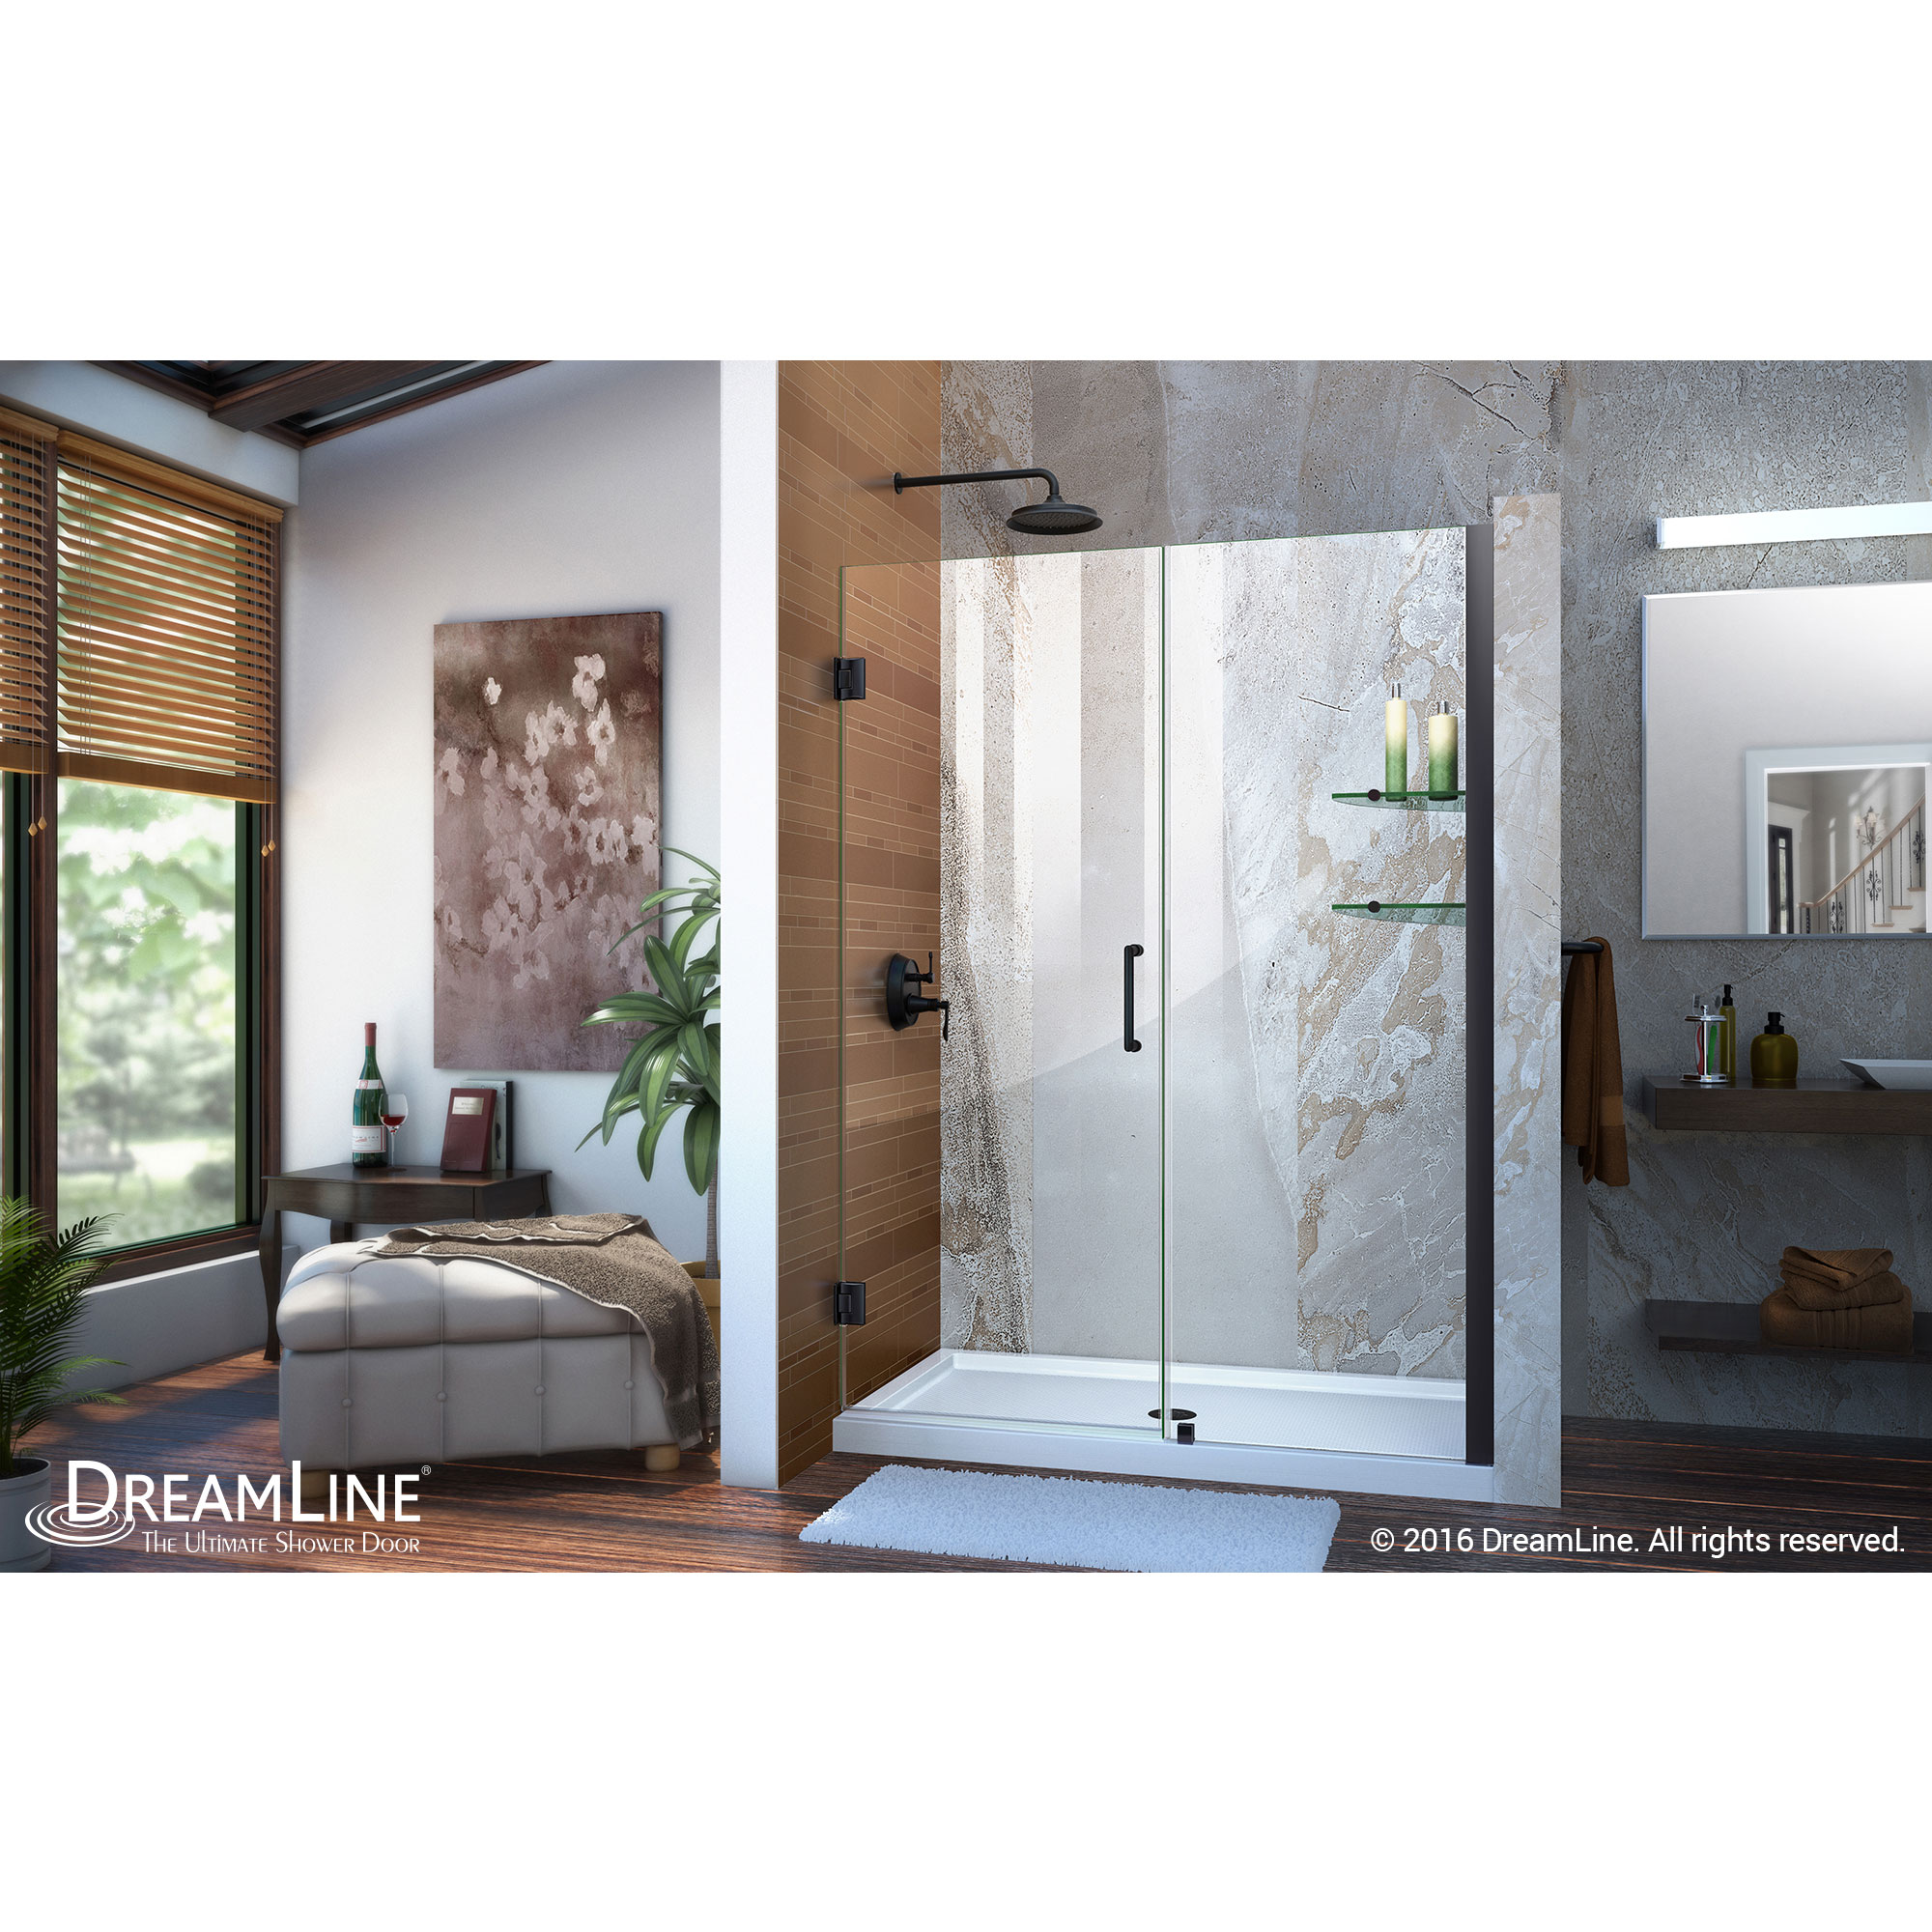 DreamLine Unidoor 47-48 in. W x 72 in. H Frameless Hinged Shower Door with Shelves in Satin Black